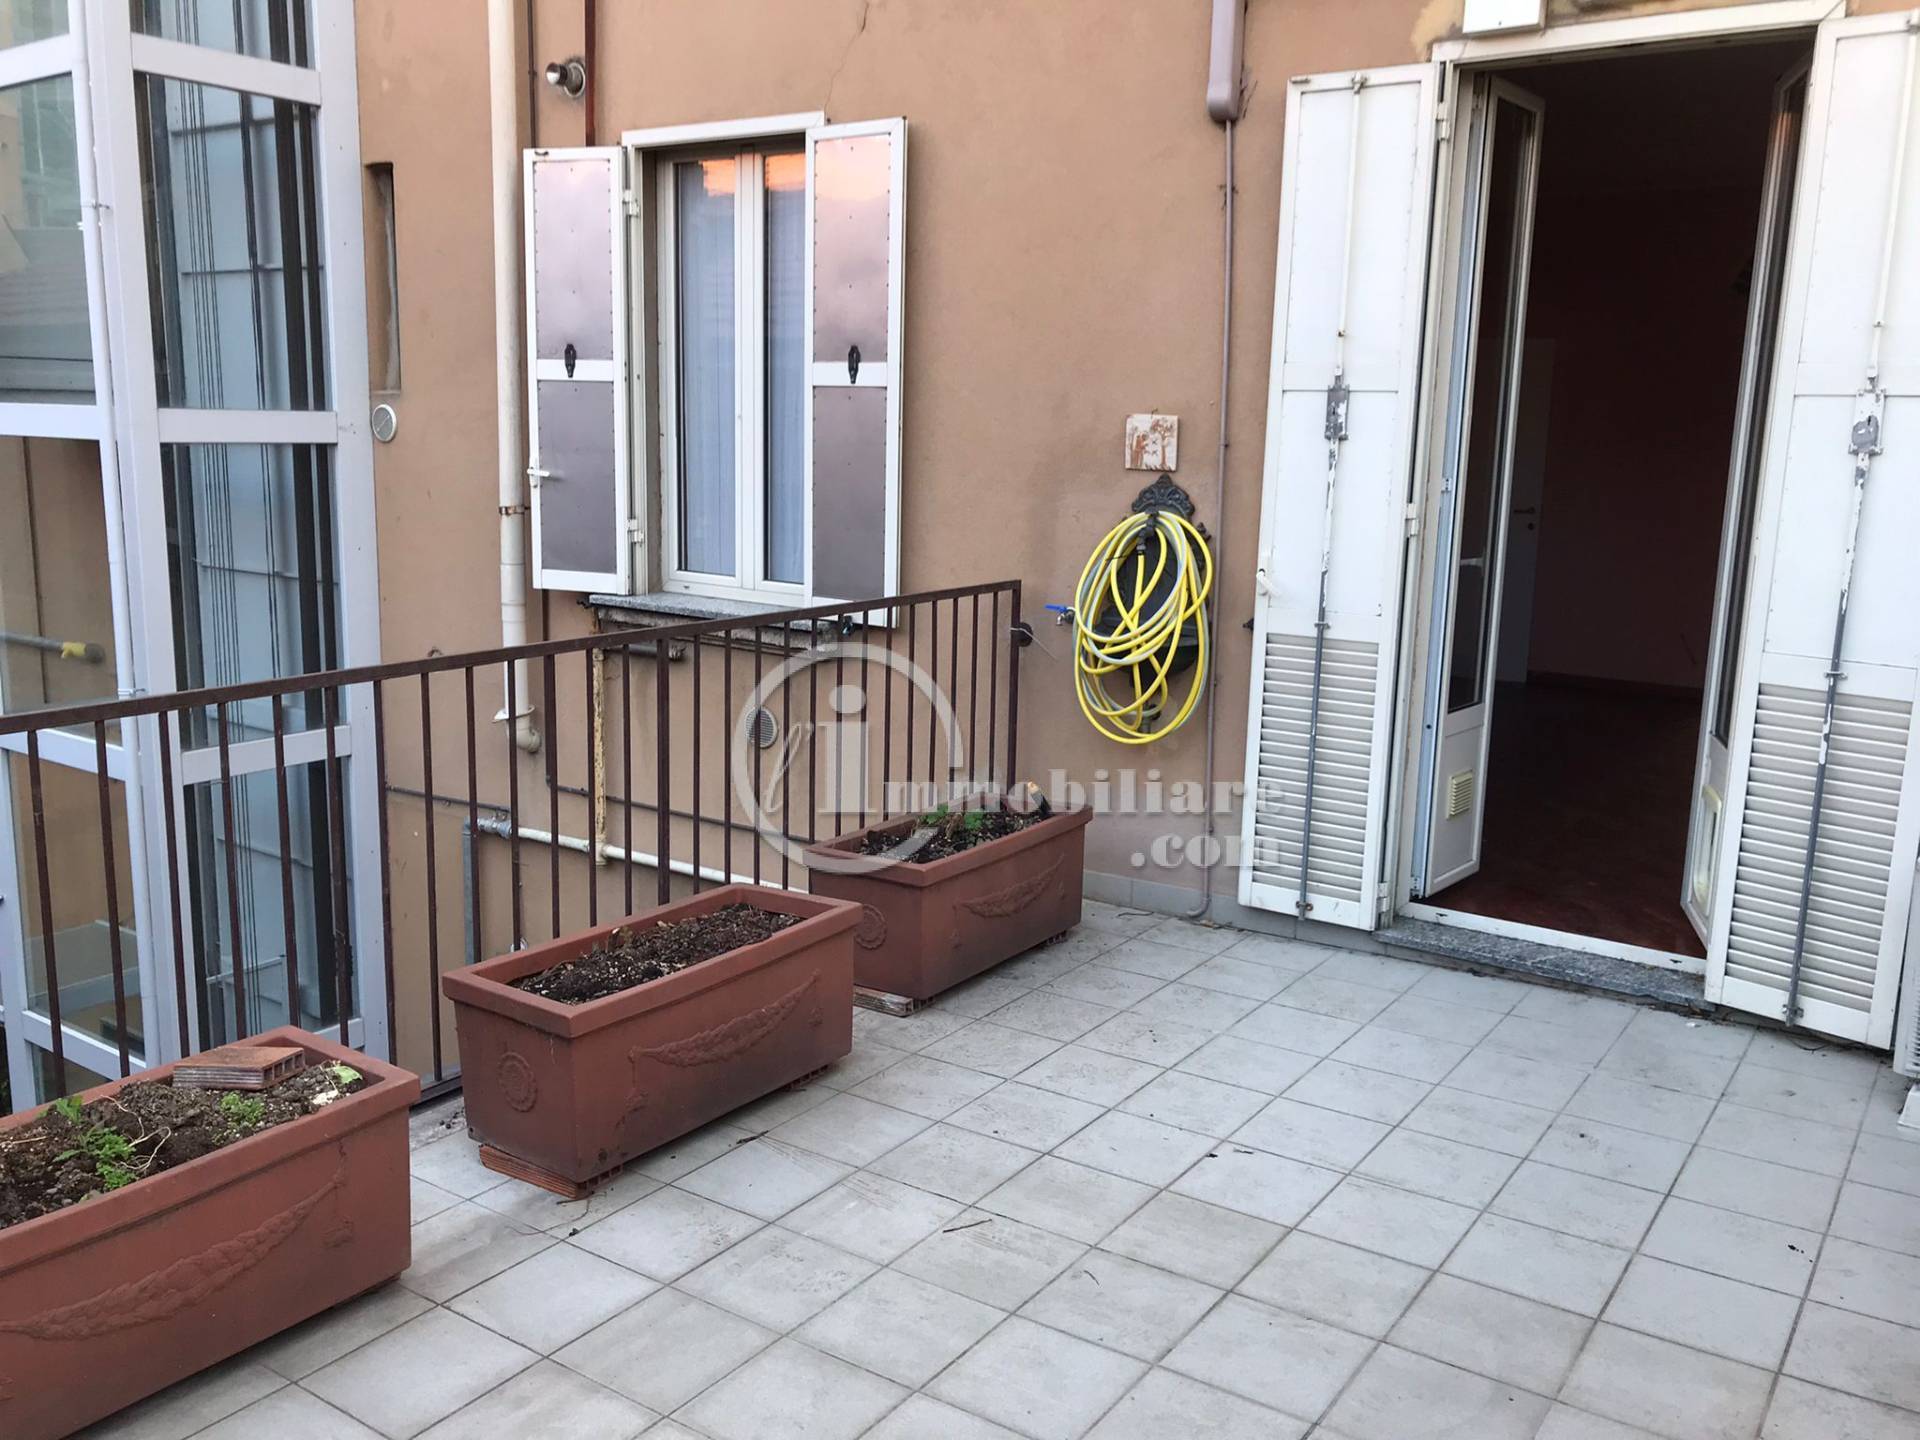 Appartamento in Vendita a Milano: 4 locali, 104 mq - Foto 15